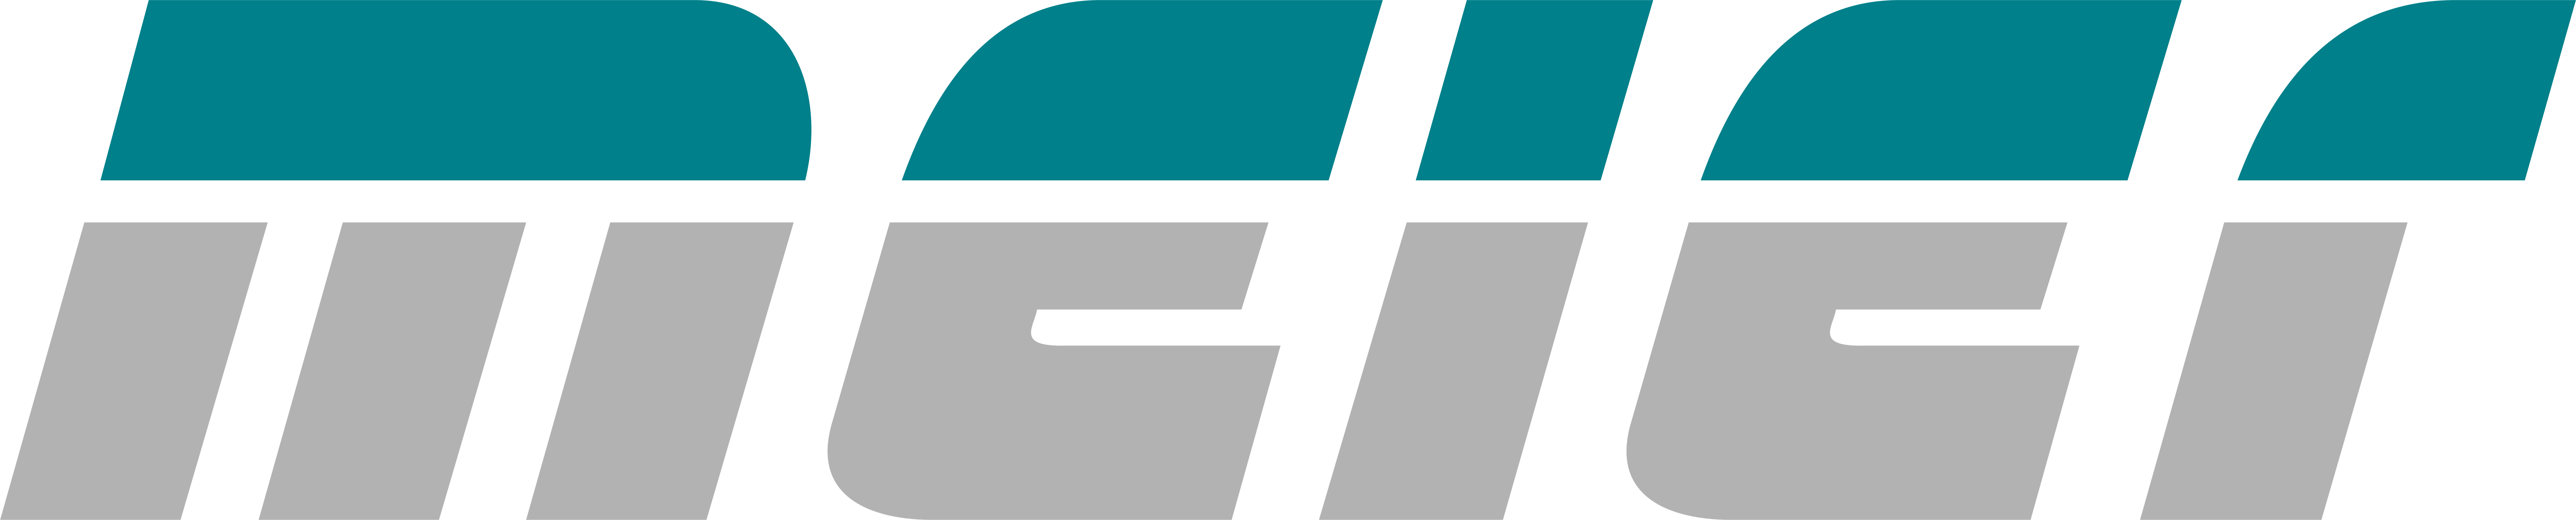 Meier Group_Logo 2021